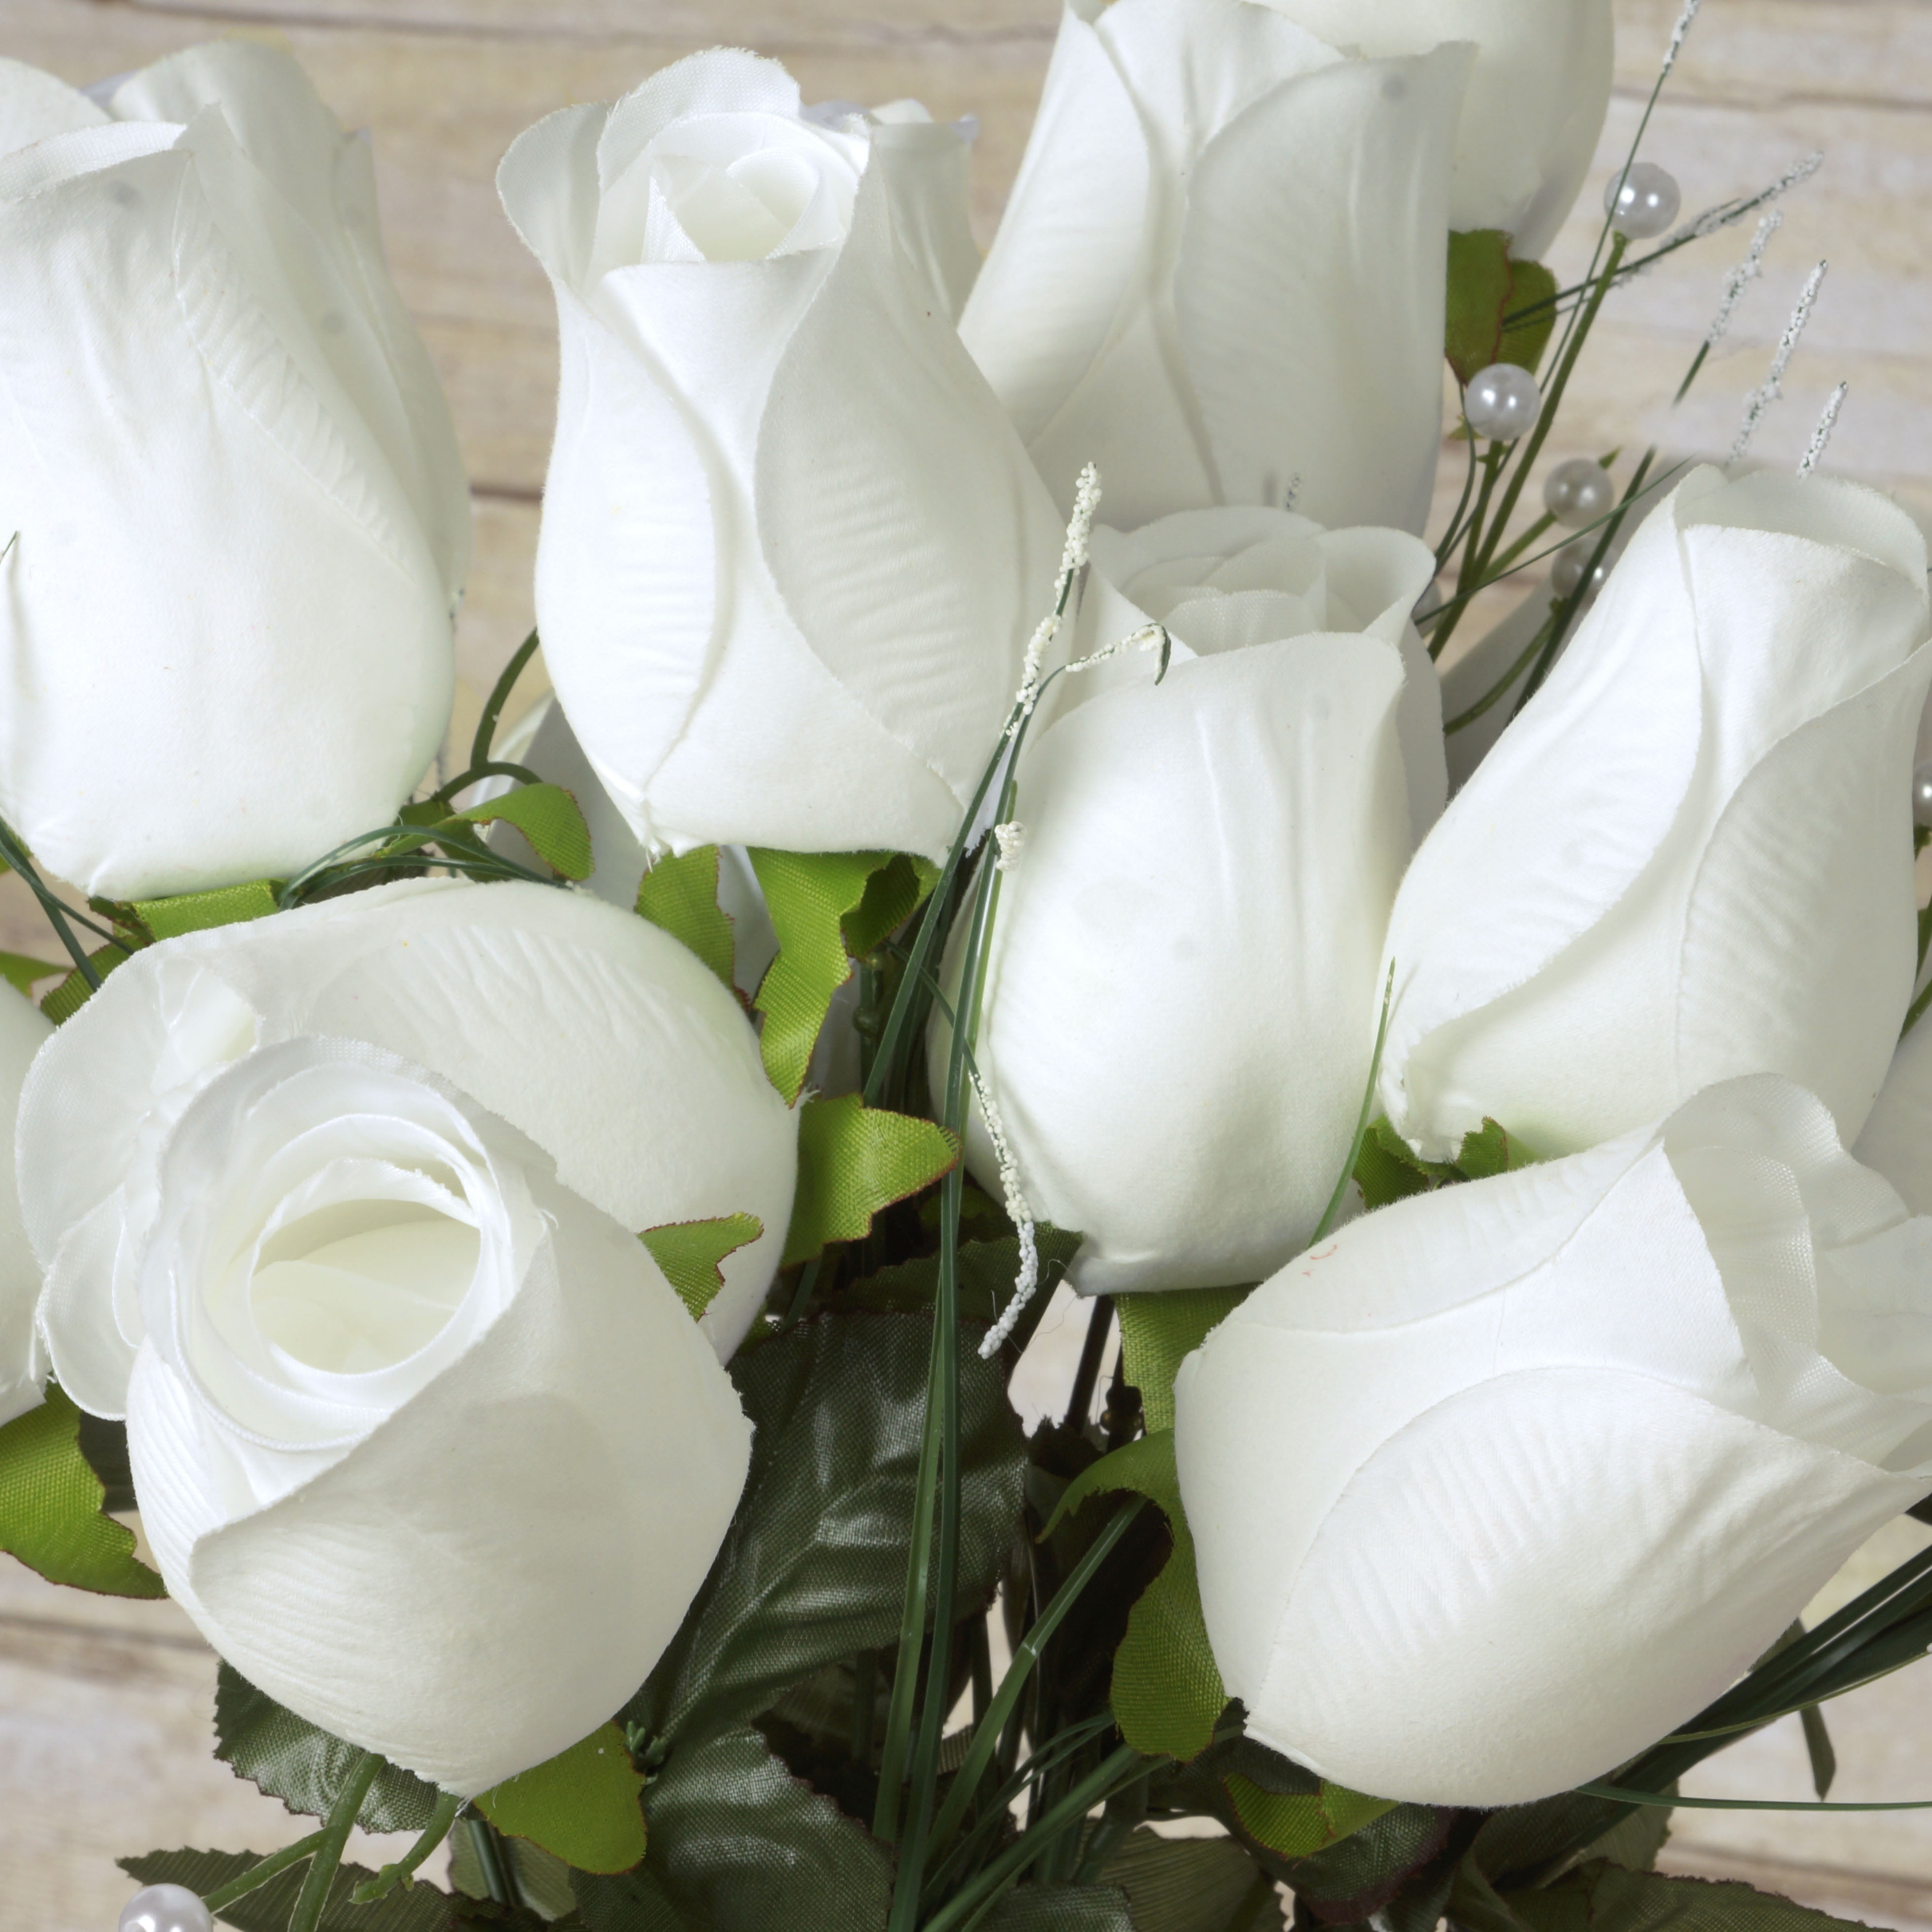 84 Giant Velvet Rose Buds on Long Stems Wedding and Craft Flowers For Decor 